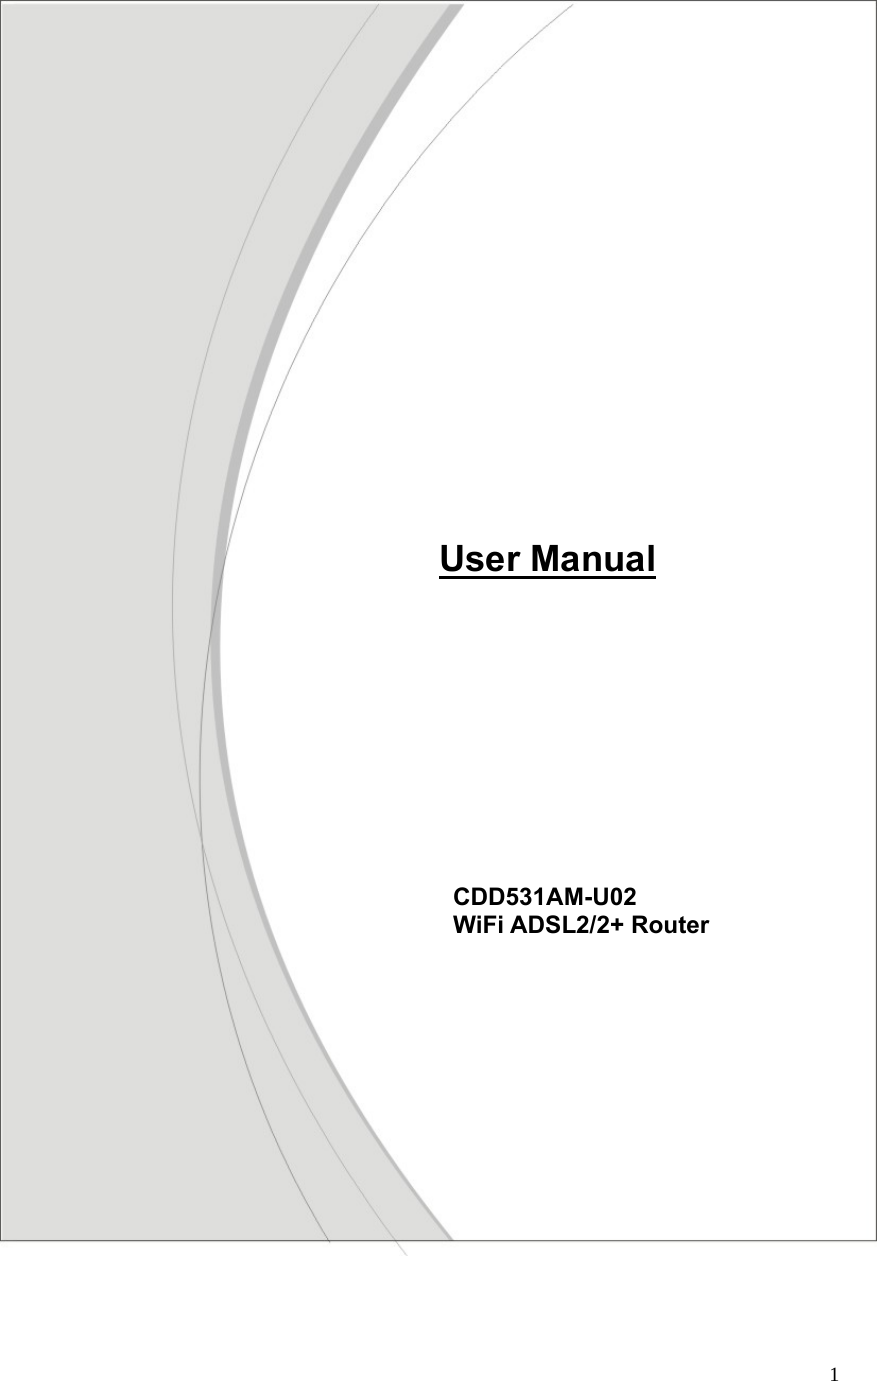  1                                            CDD531AM-U02  WiFi ADSL2/2+ Router    User Manual 